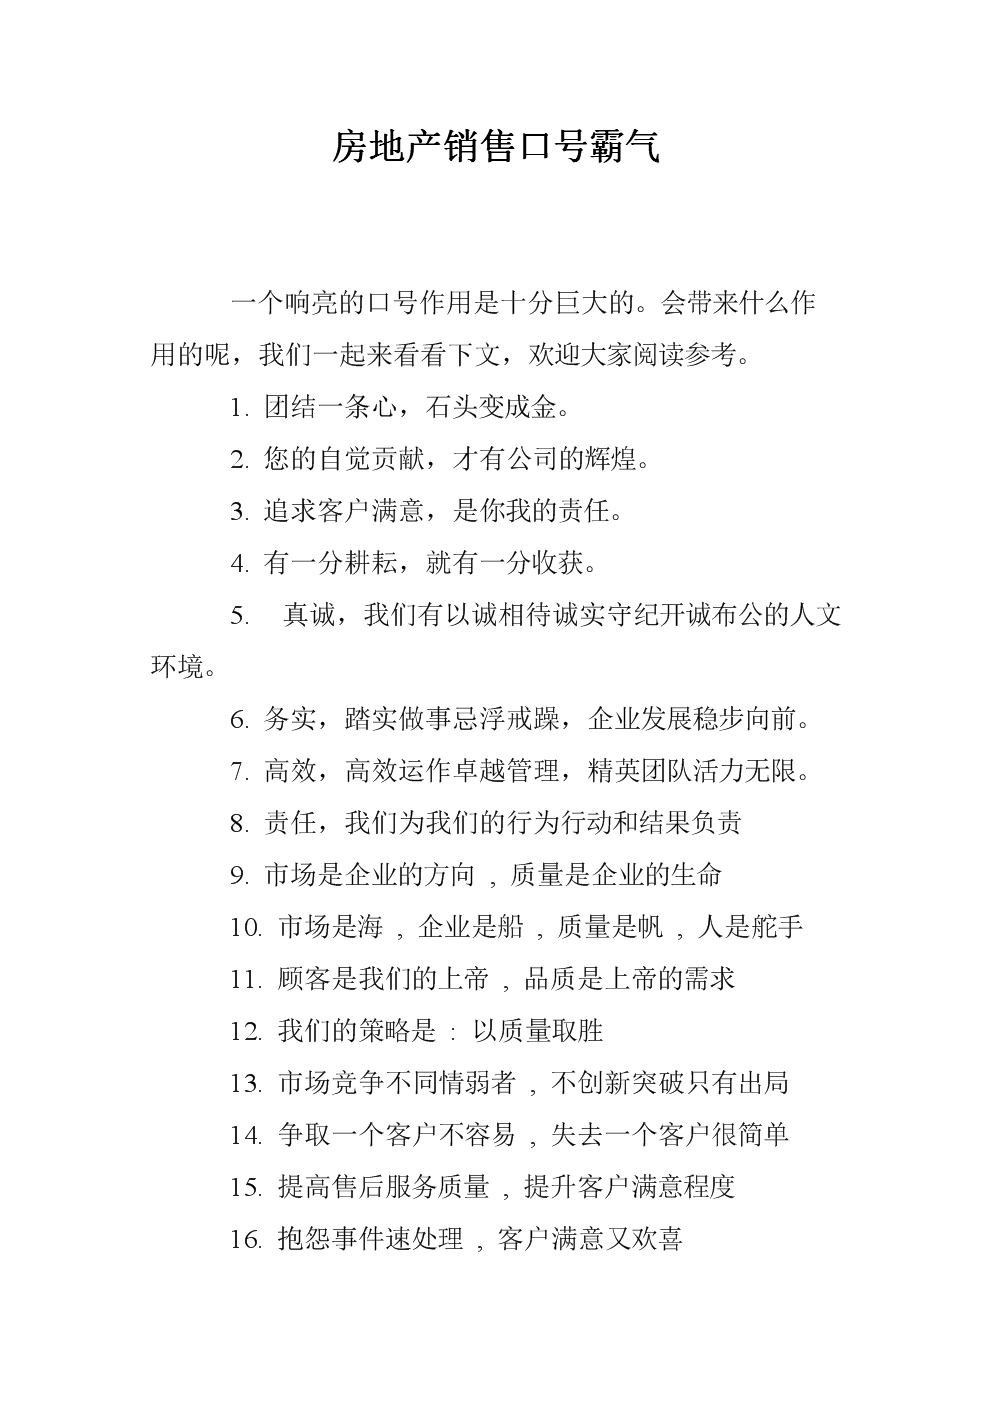 房源的app 推推停停99网是北京雄鹰城讯股权科技公司的核心产品